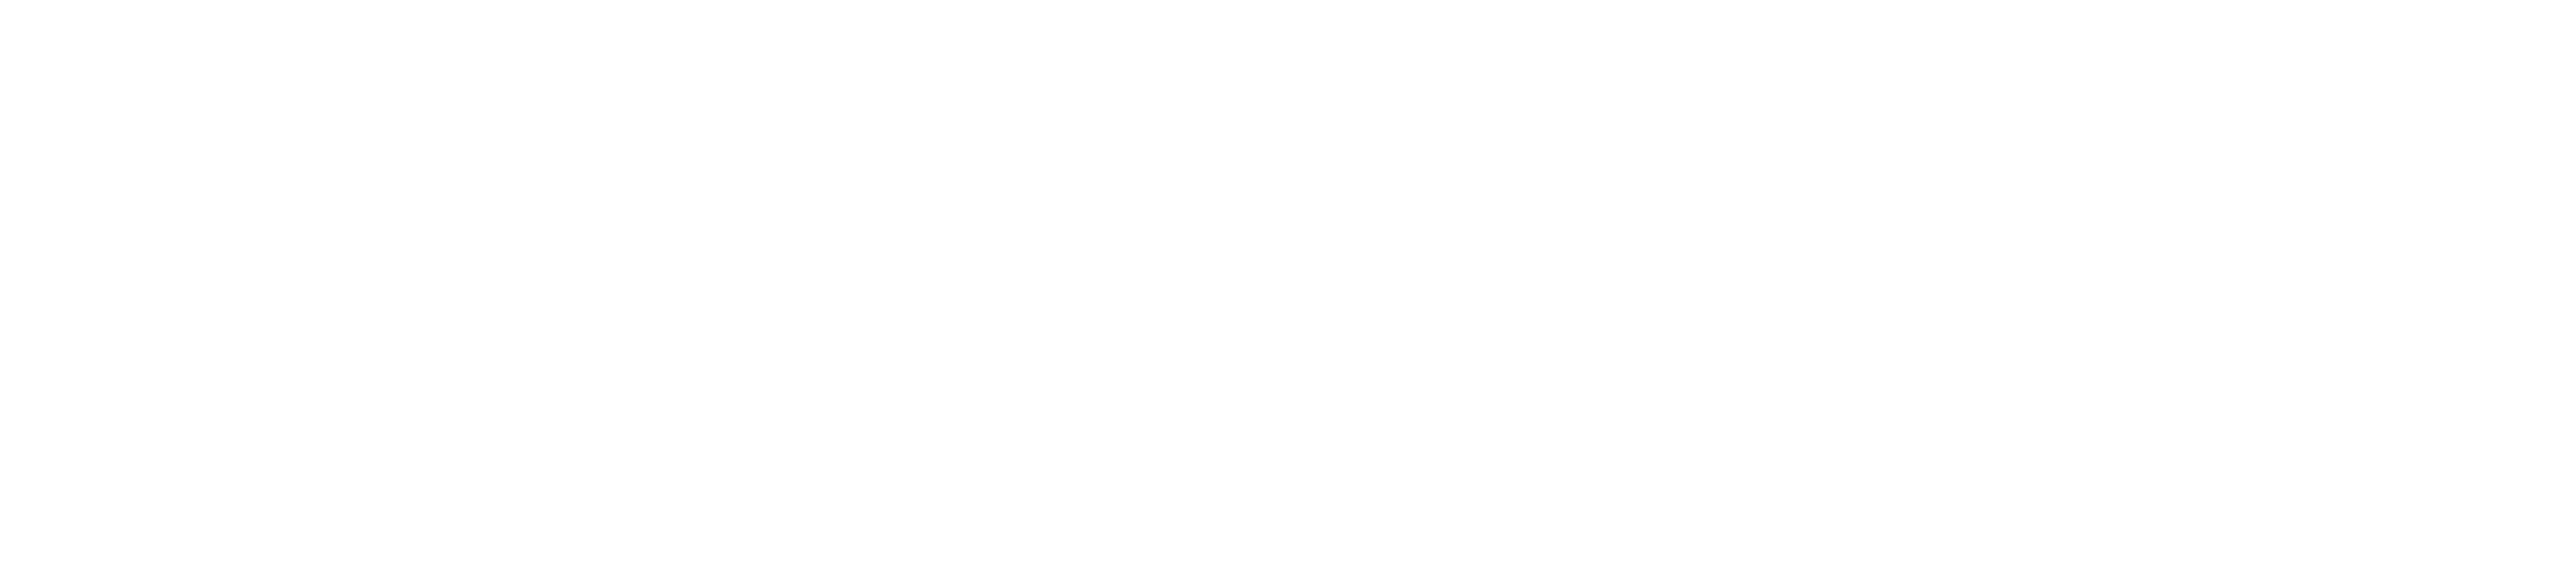 impulsado por el logotipo de donaciones comunitarias